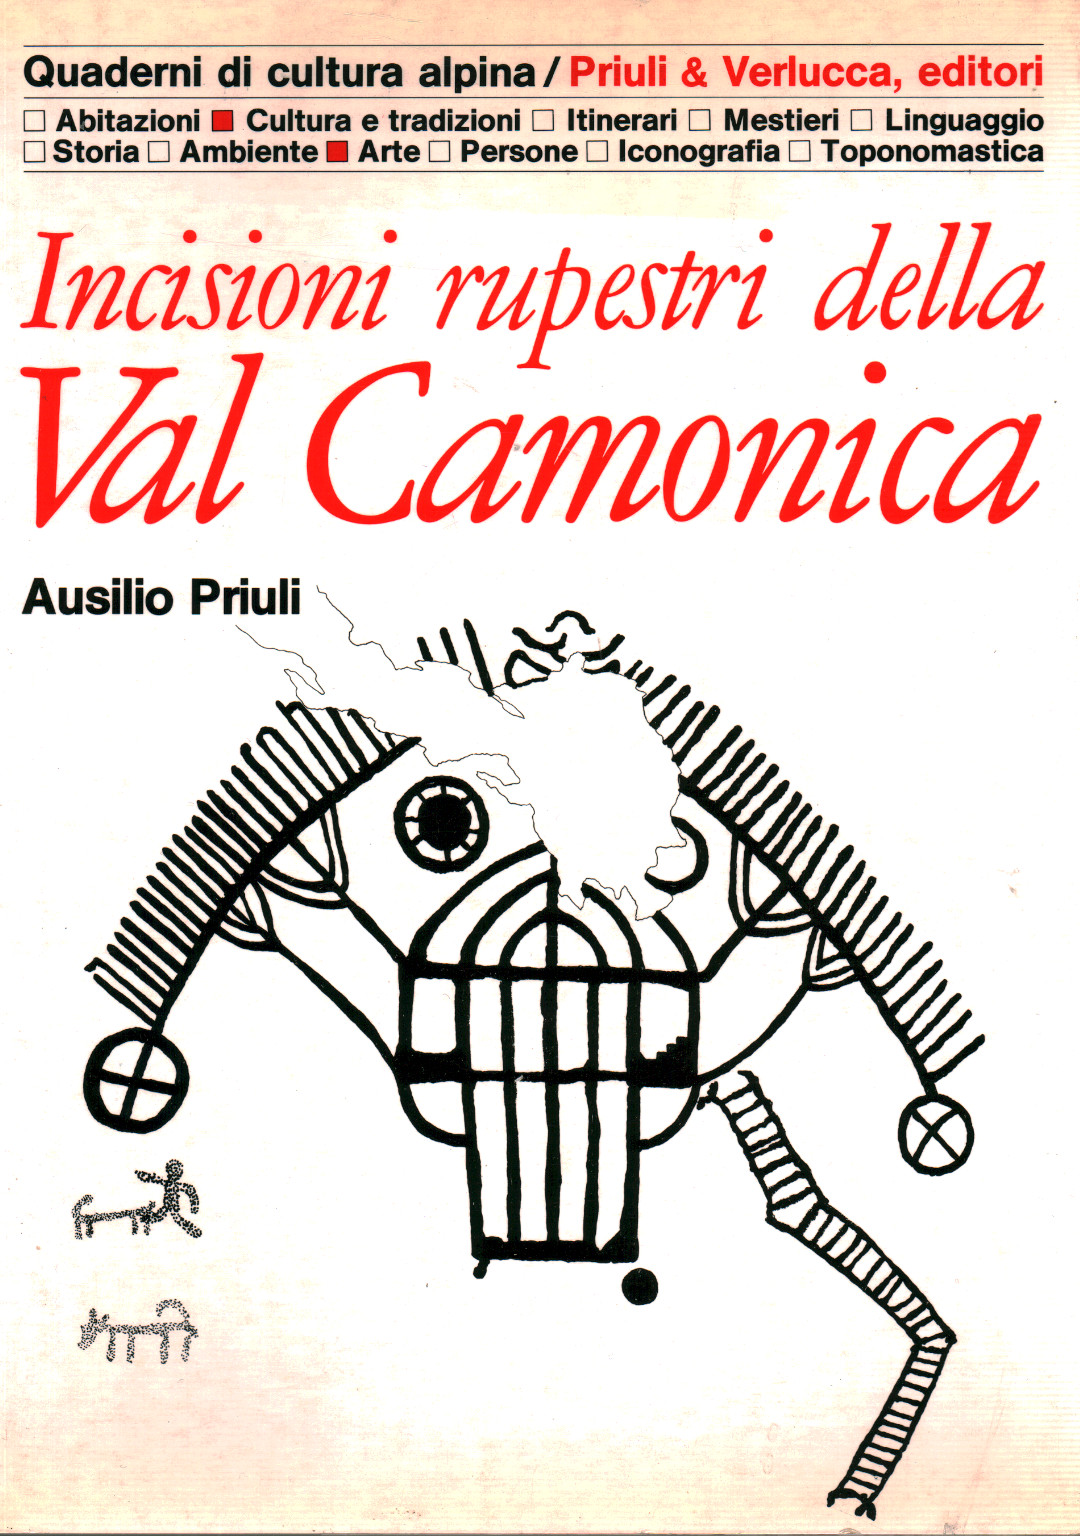 Felszeichnungen des Val Camonica